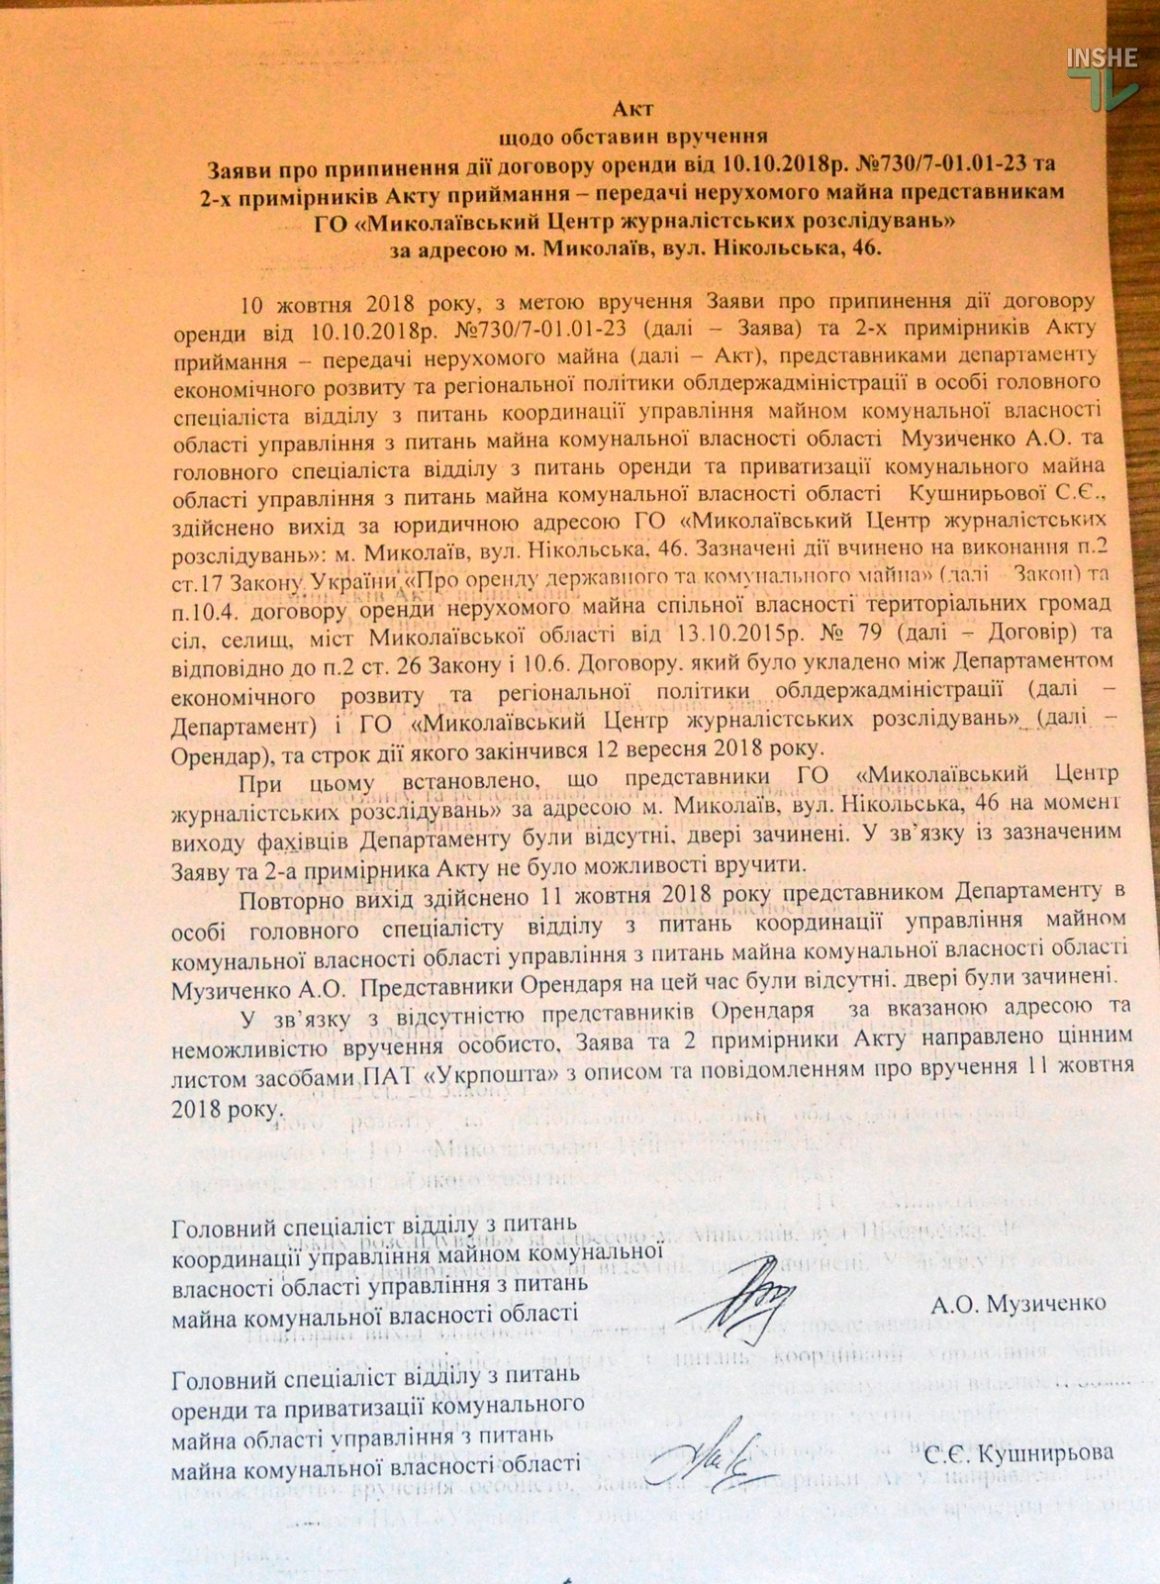 В Николаеве ОГА выселяет редакцию Центра журналистских расследований - те заявляют, что аренда продлена 9